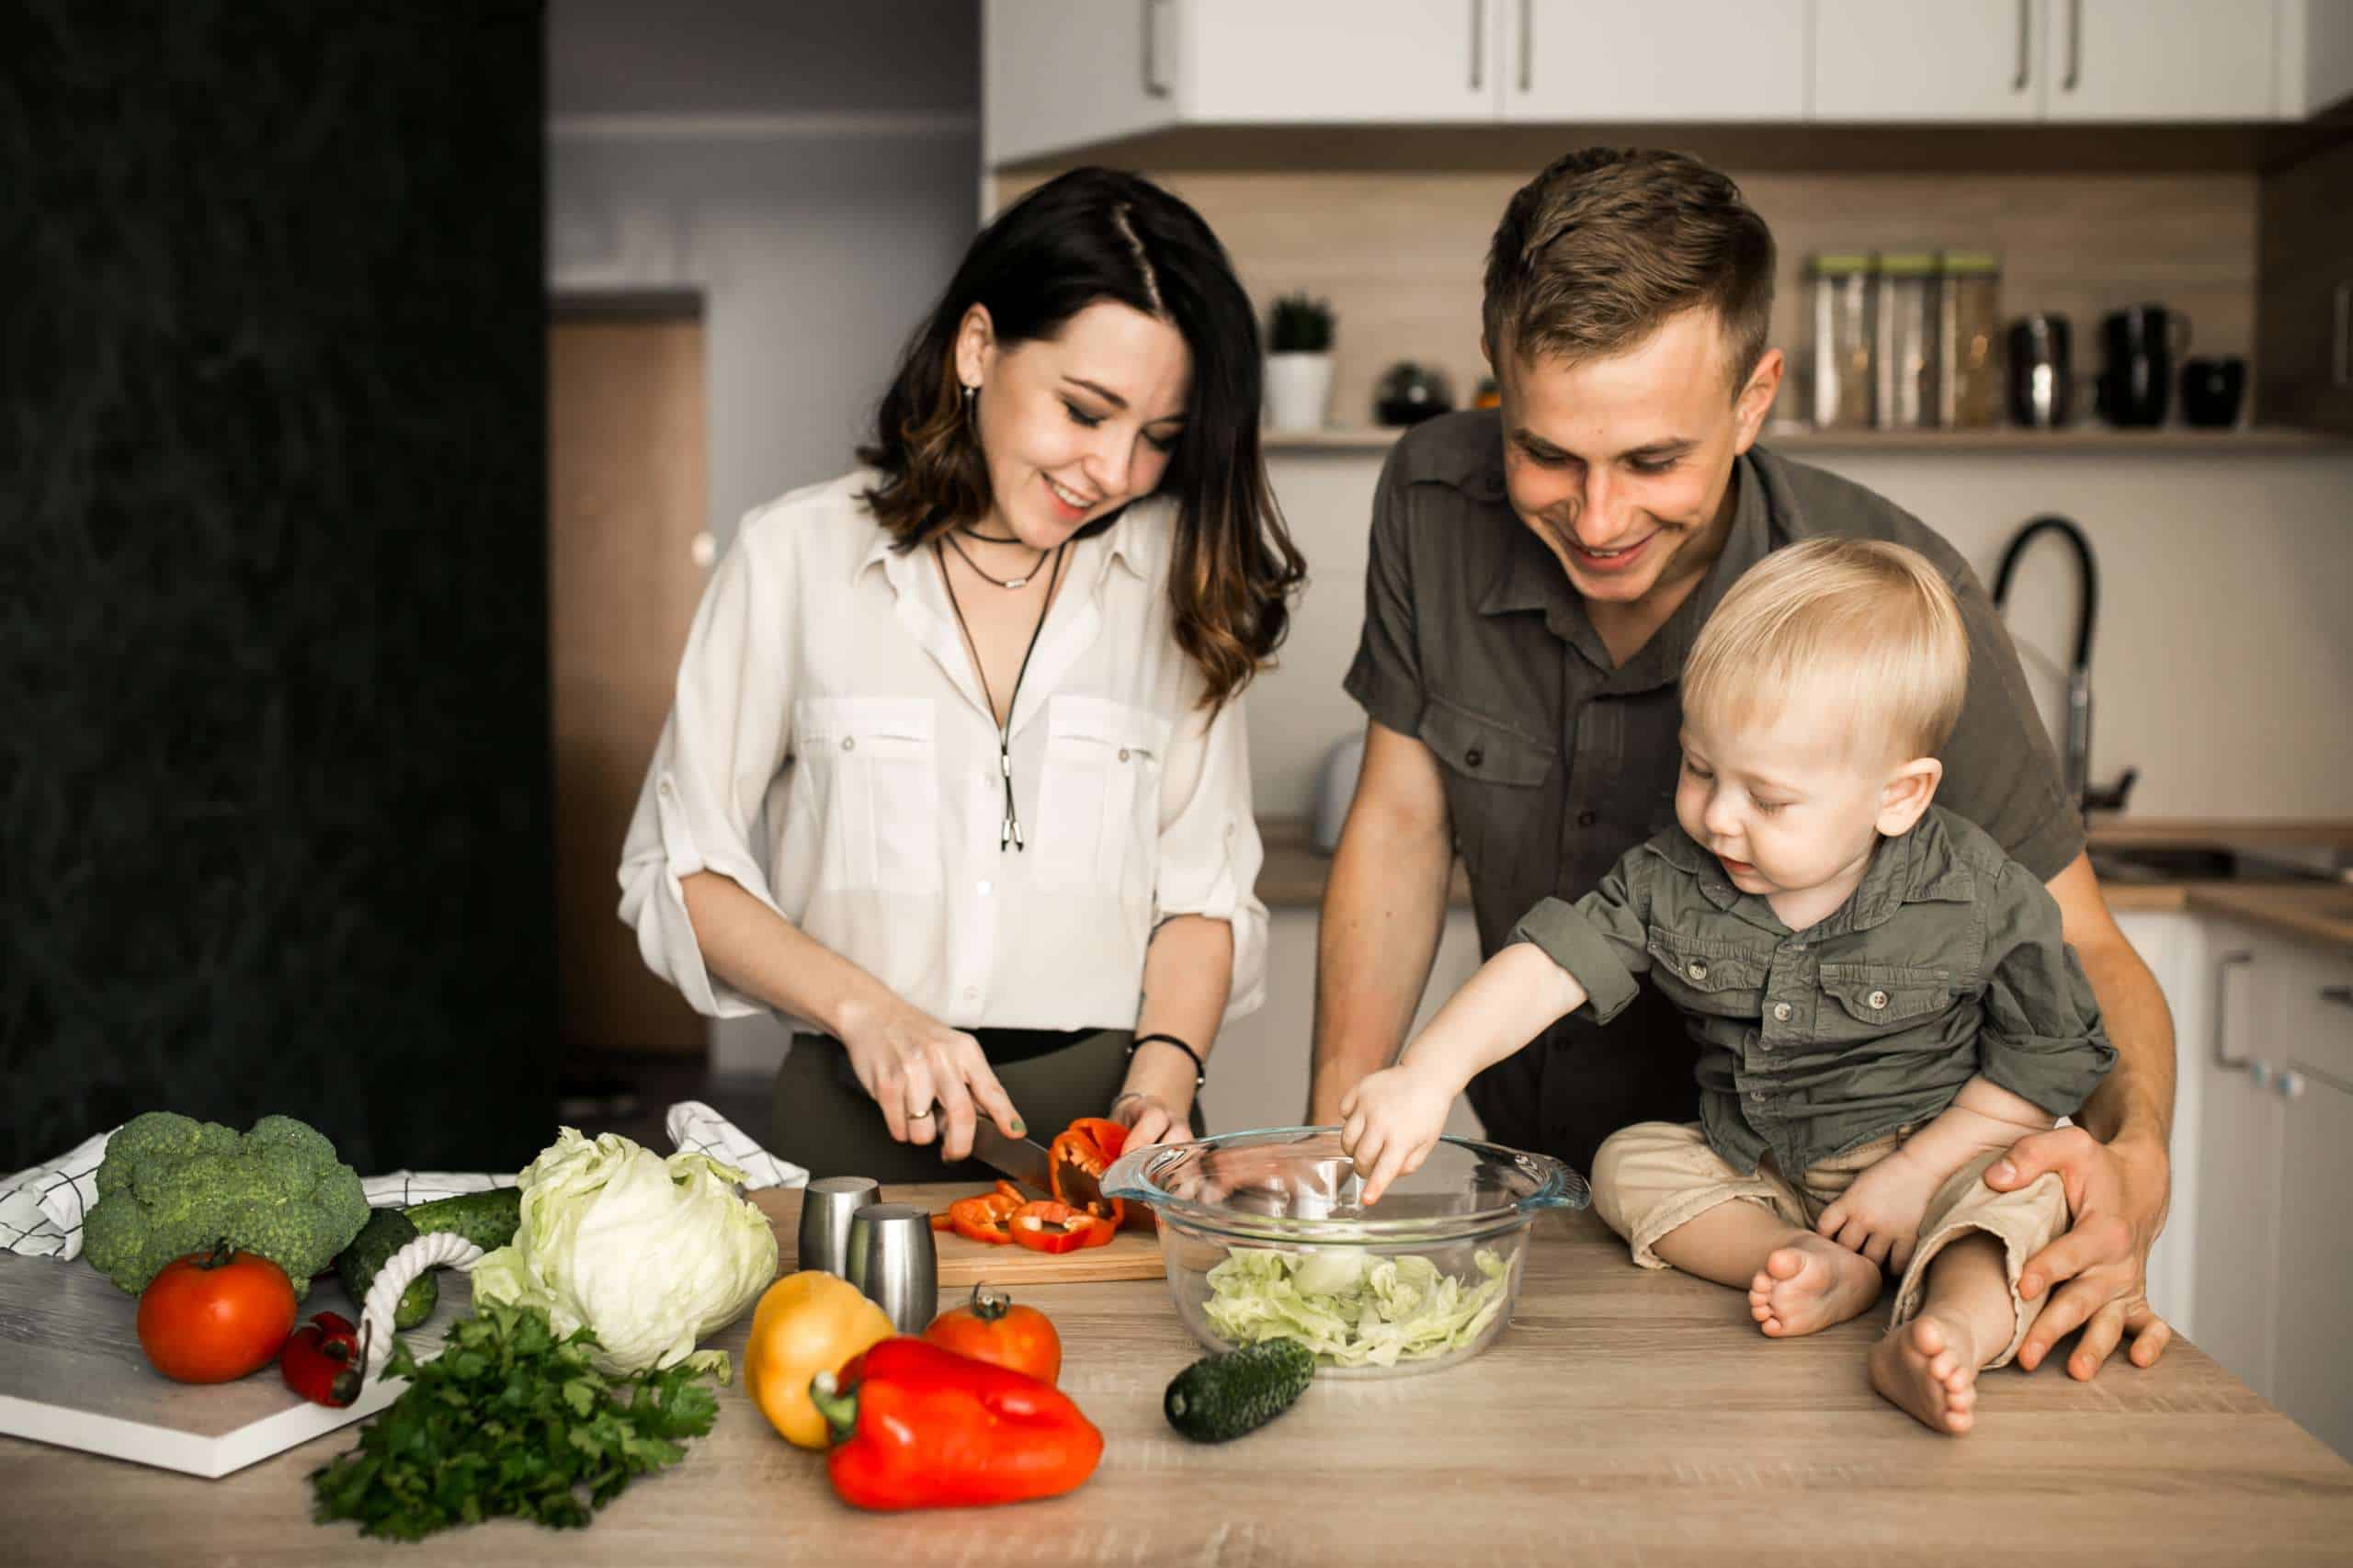 Prawidłowe nawyki żywieniowe kluczem do sukcesu. Jak zadbać o zdrowie wszystkich członków rodziny?